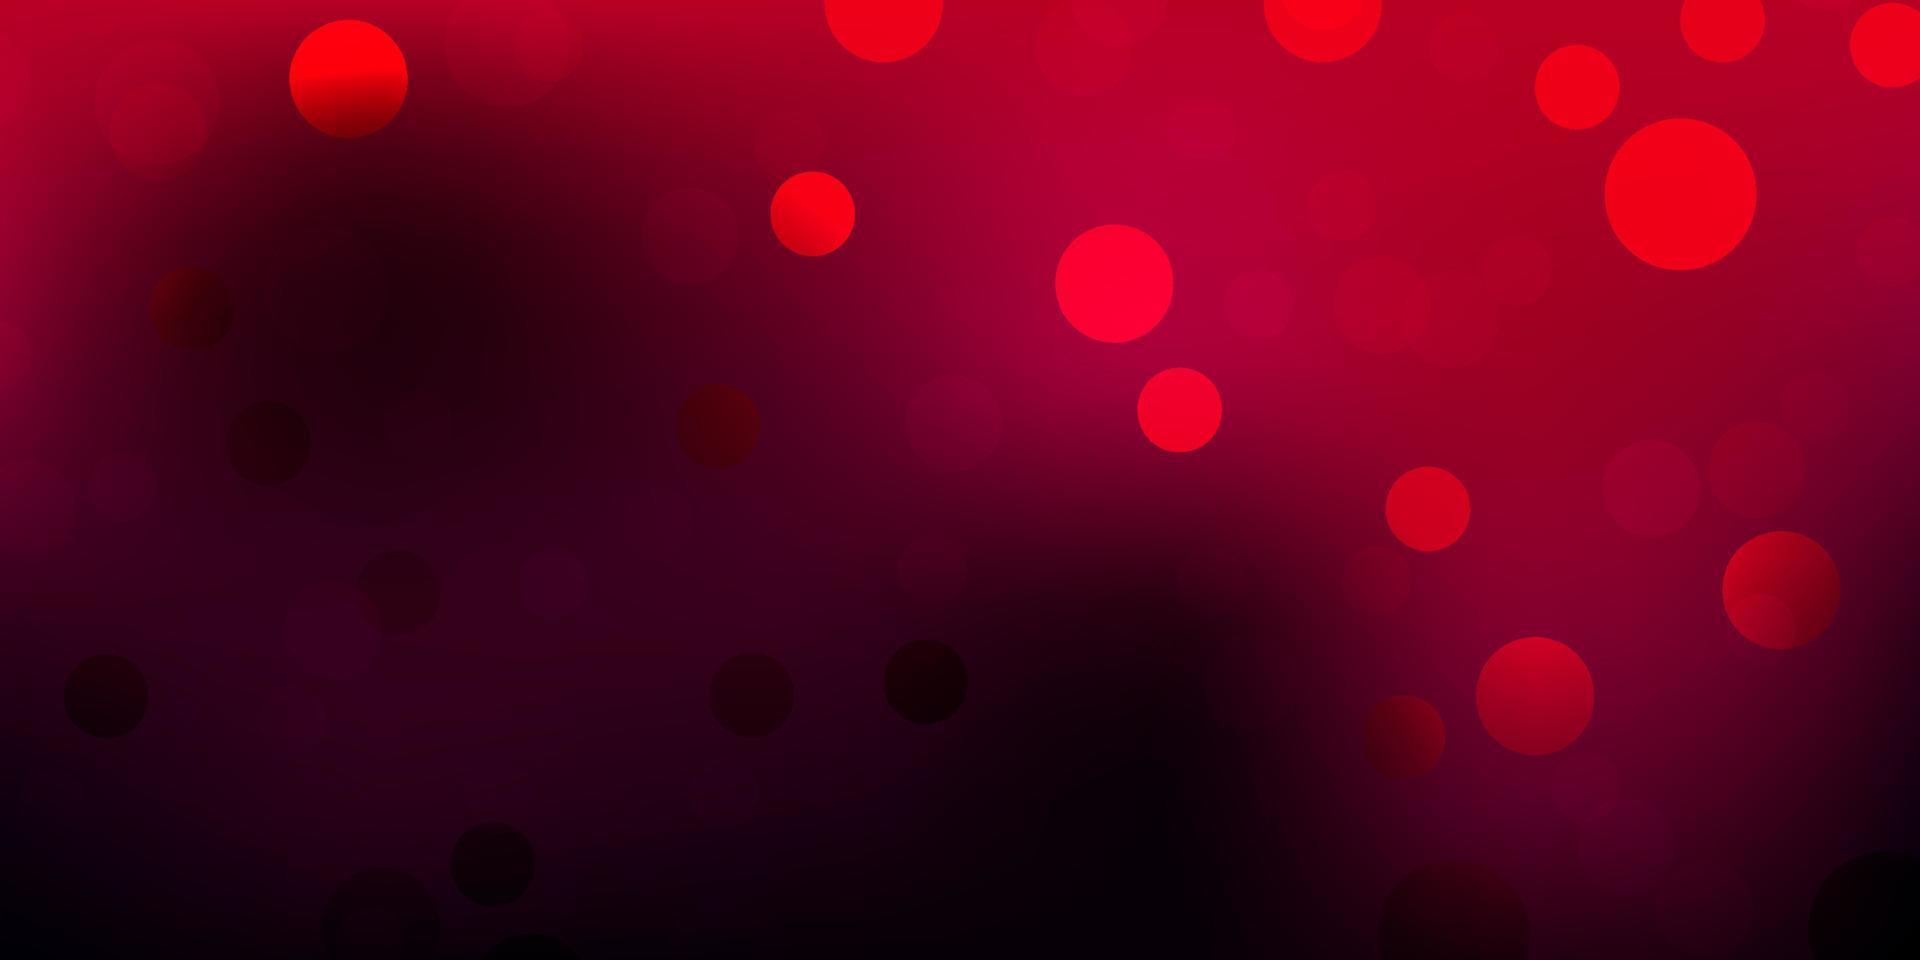 sfondo vettoriale rosa scuro con bolle.